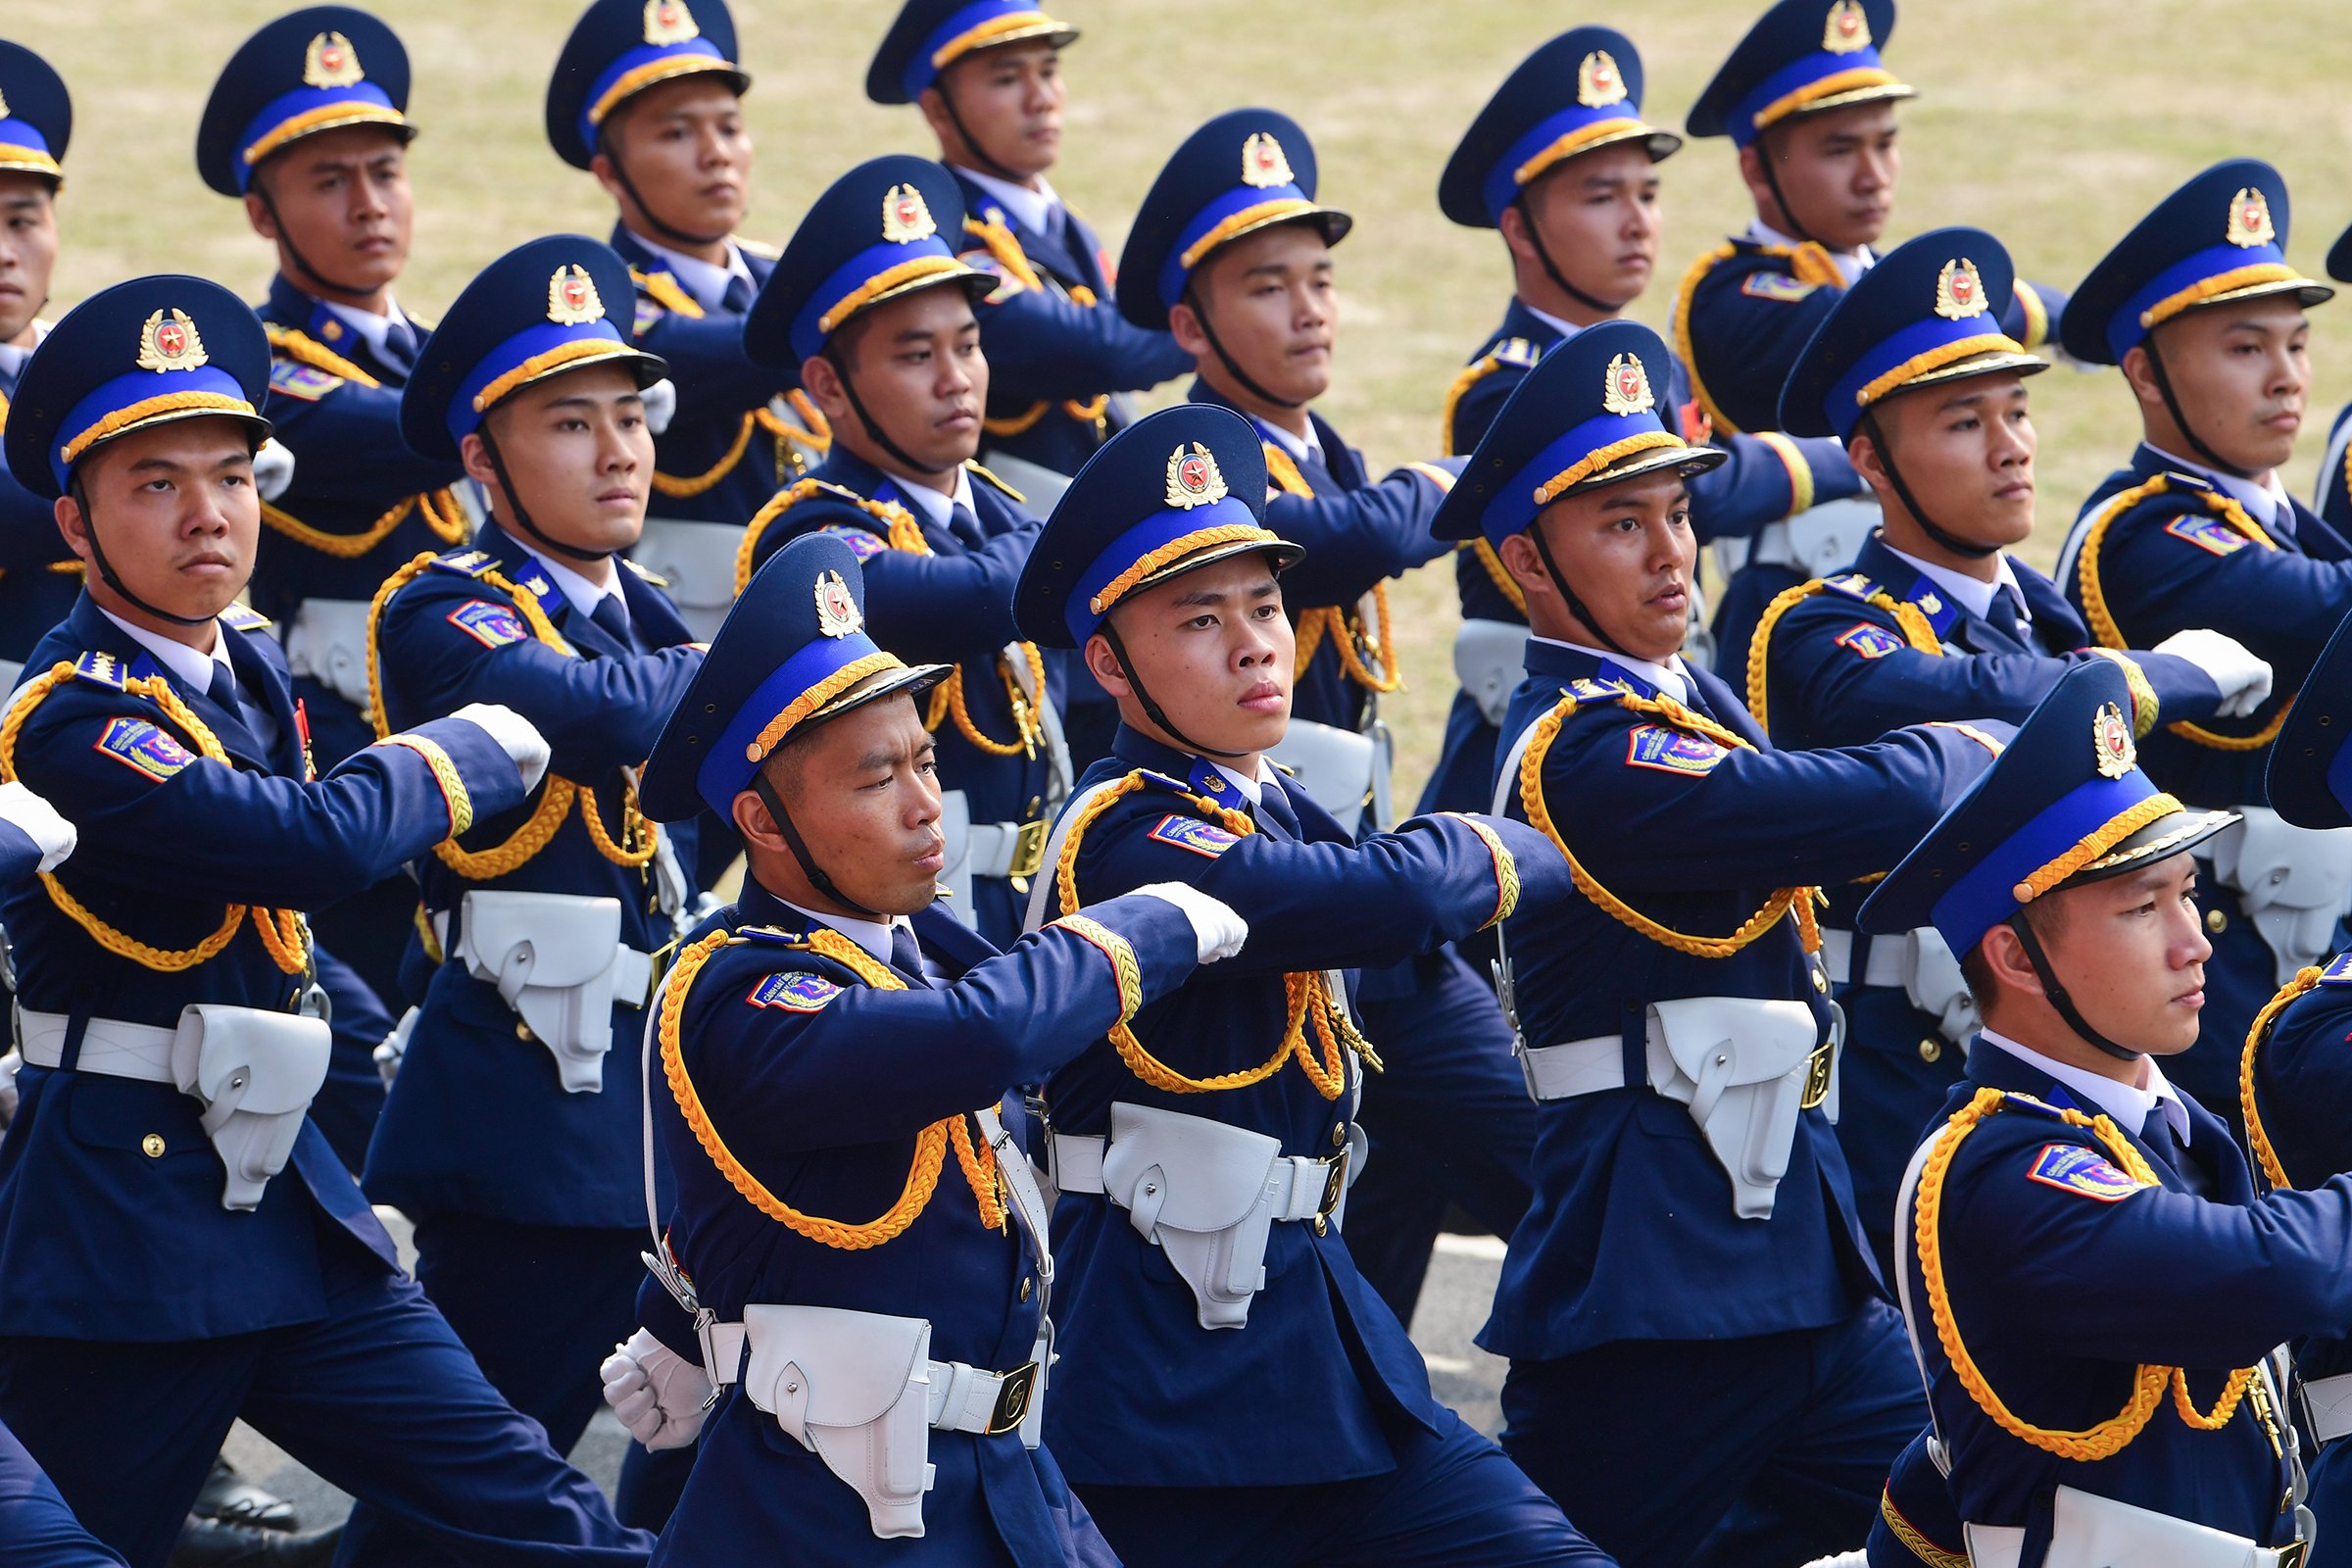 Lễ diễu binh oai hùng và đầy tự hào của 12.000 người - những hình ảnh đi vào lịch sử ở Điện Biên Phủ- Ảnh 15.